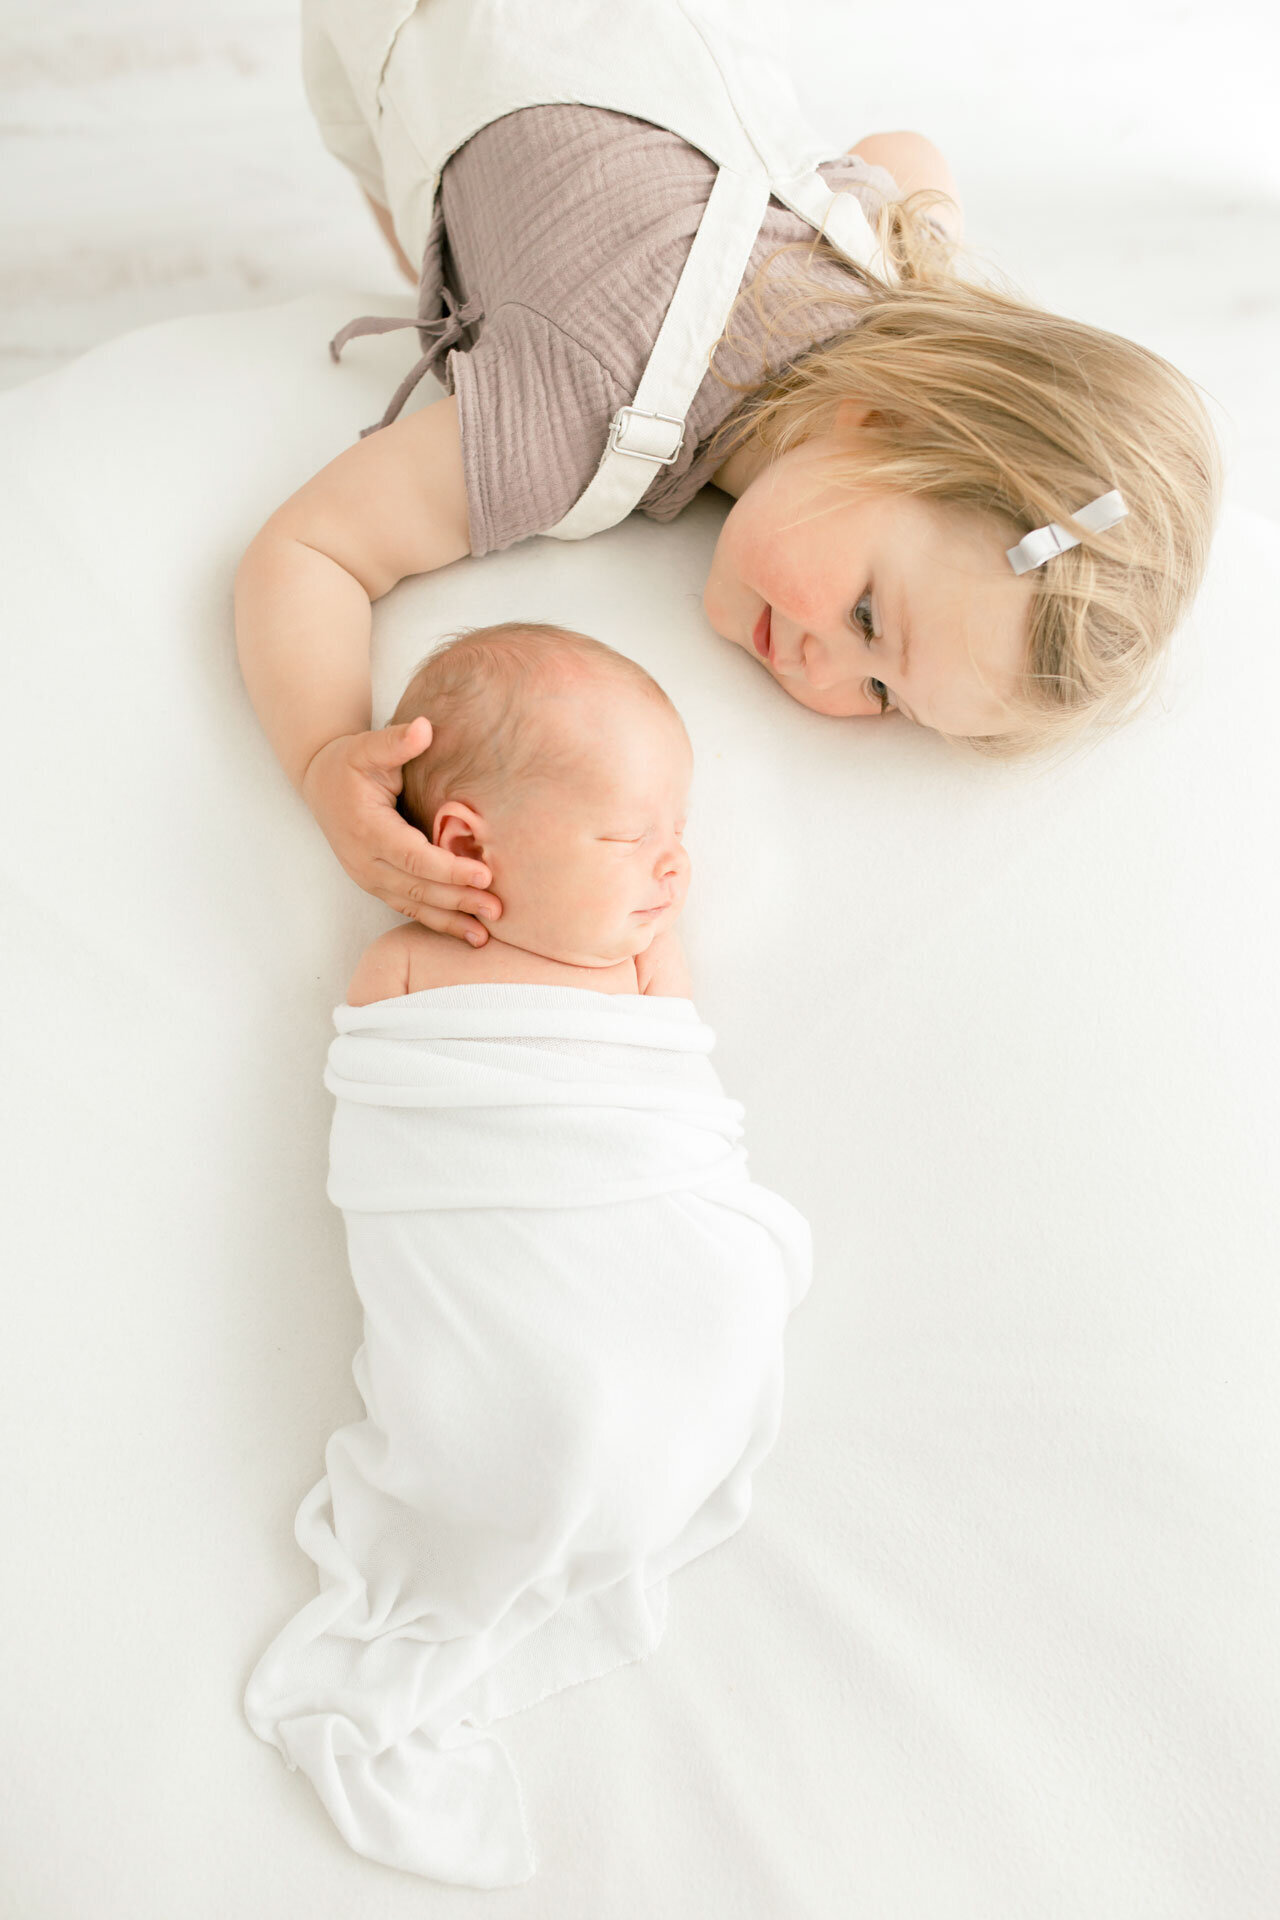 Babyfotografie: Neugeborenes mit Schwester (Kleinkind) bei einem Neugeborenenfotoshooting in Gütersloh bei Bielefeld.